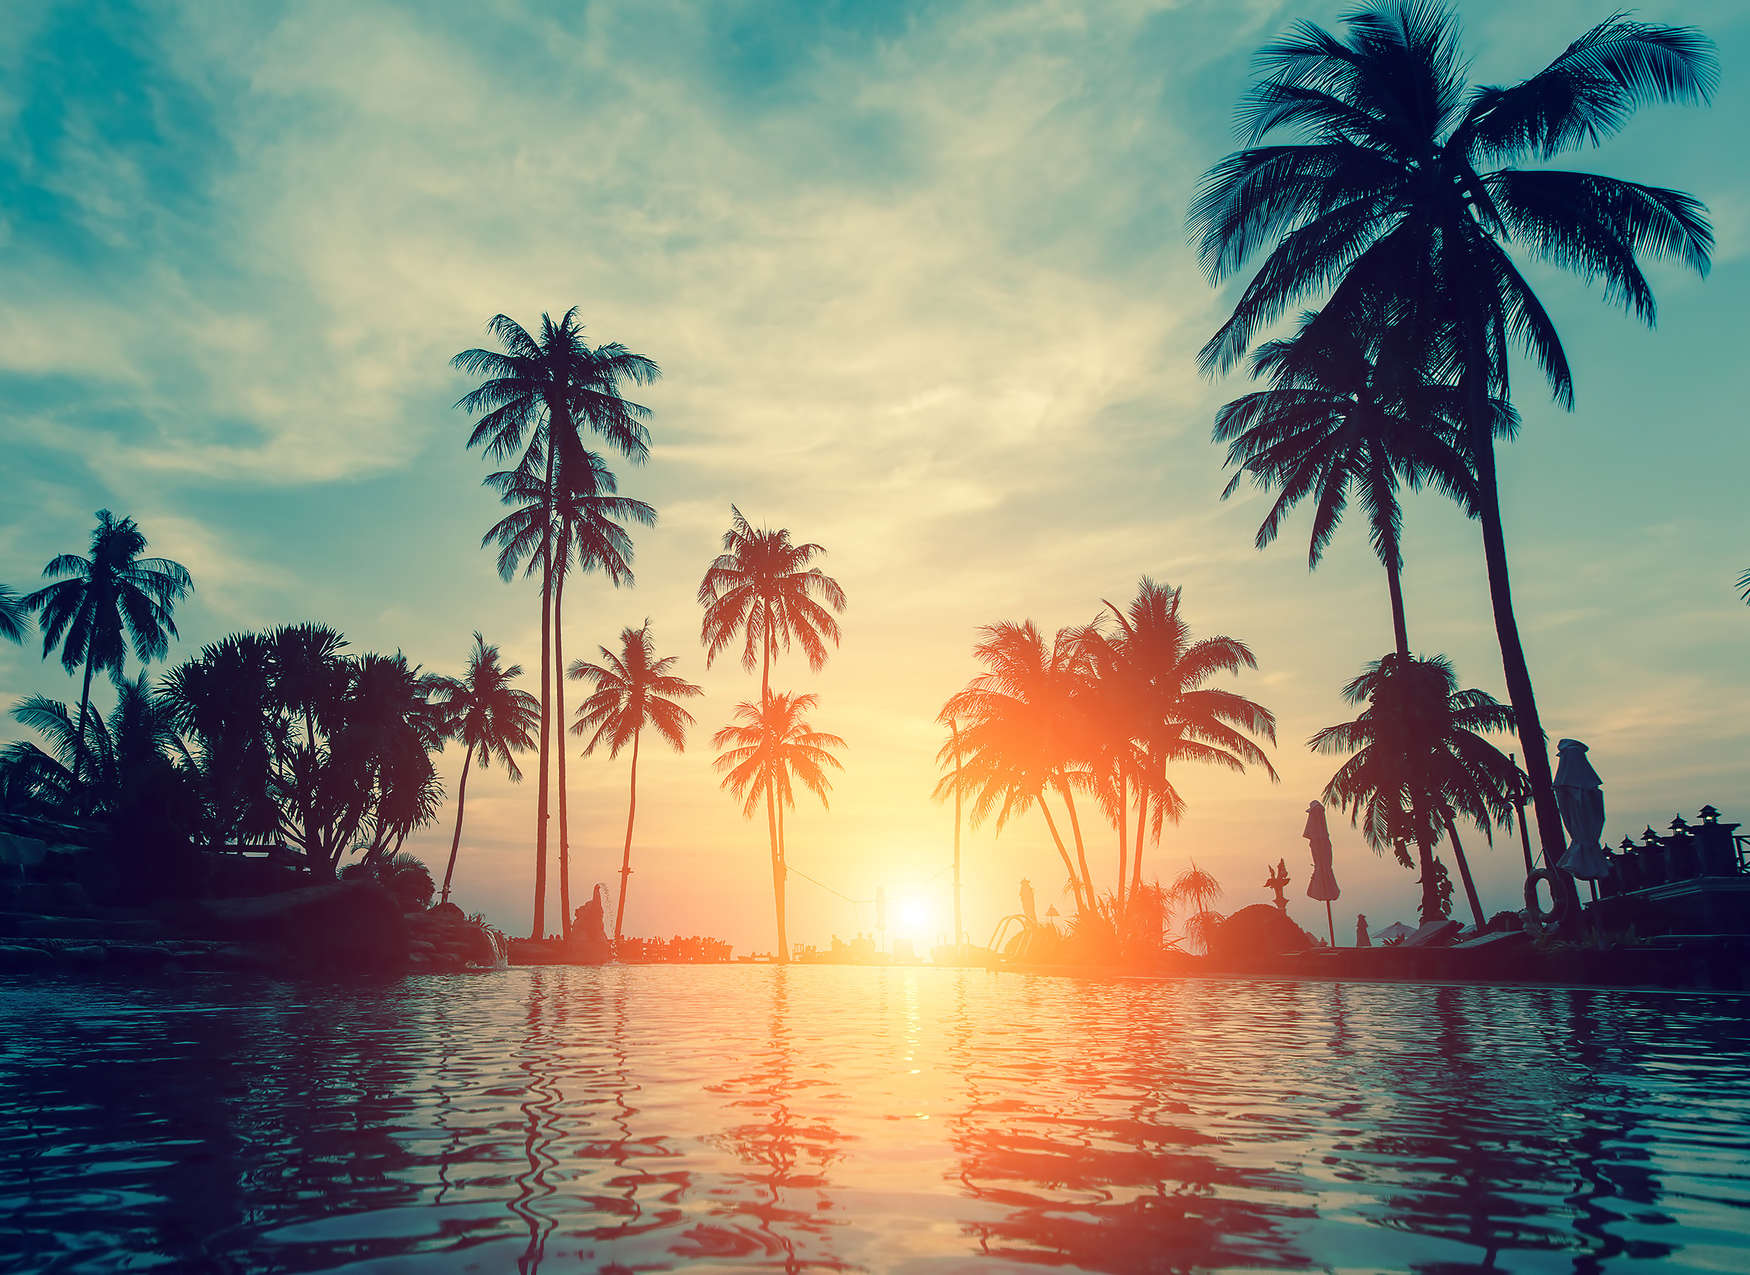             Digital behang met palmbomen op het water in de zonsondergang - blauw, oranje, zwart
        